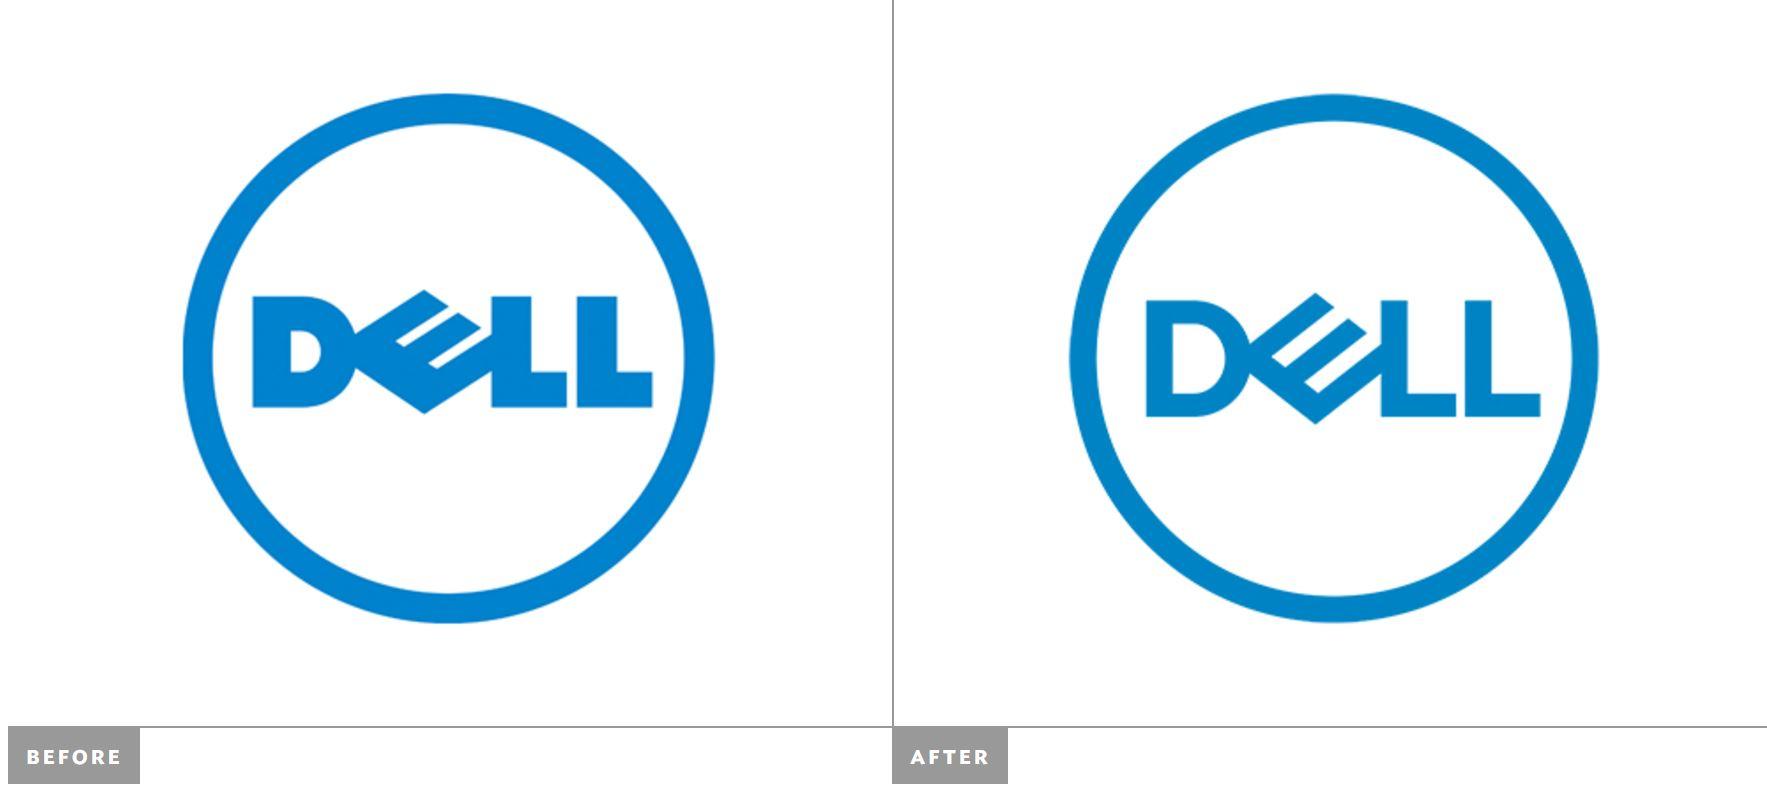 New Dell Logo - Download DELL 2016 vector logo (.EPS + .SVG) - Seeklogo.net